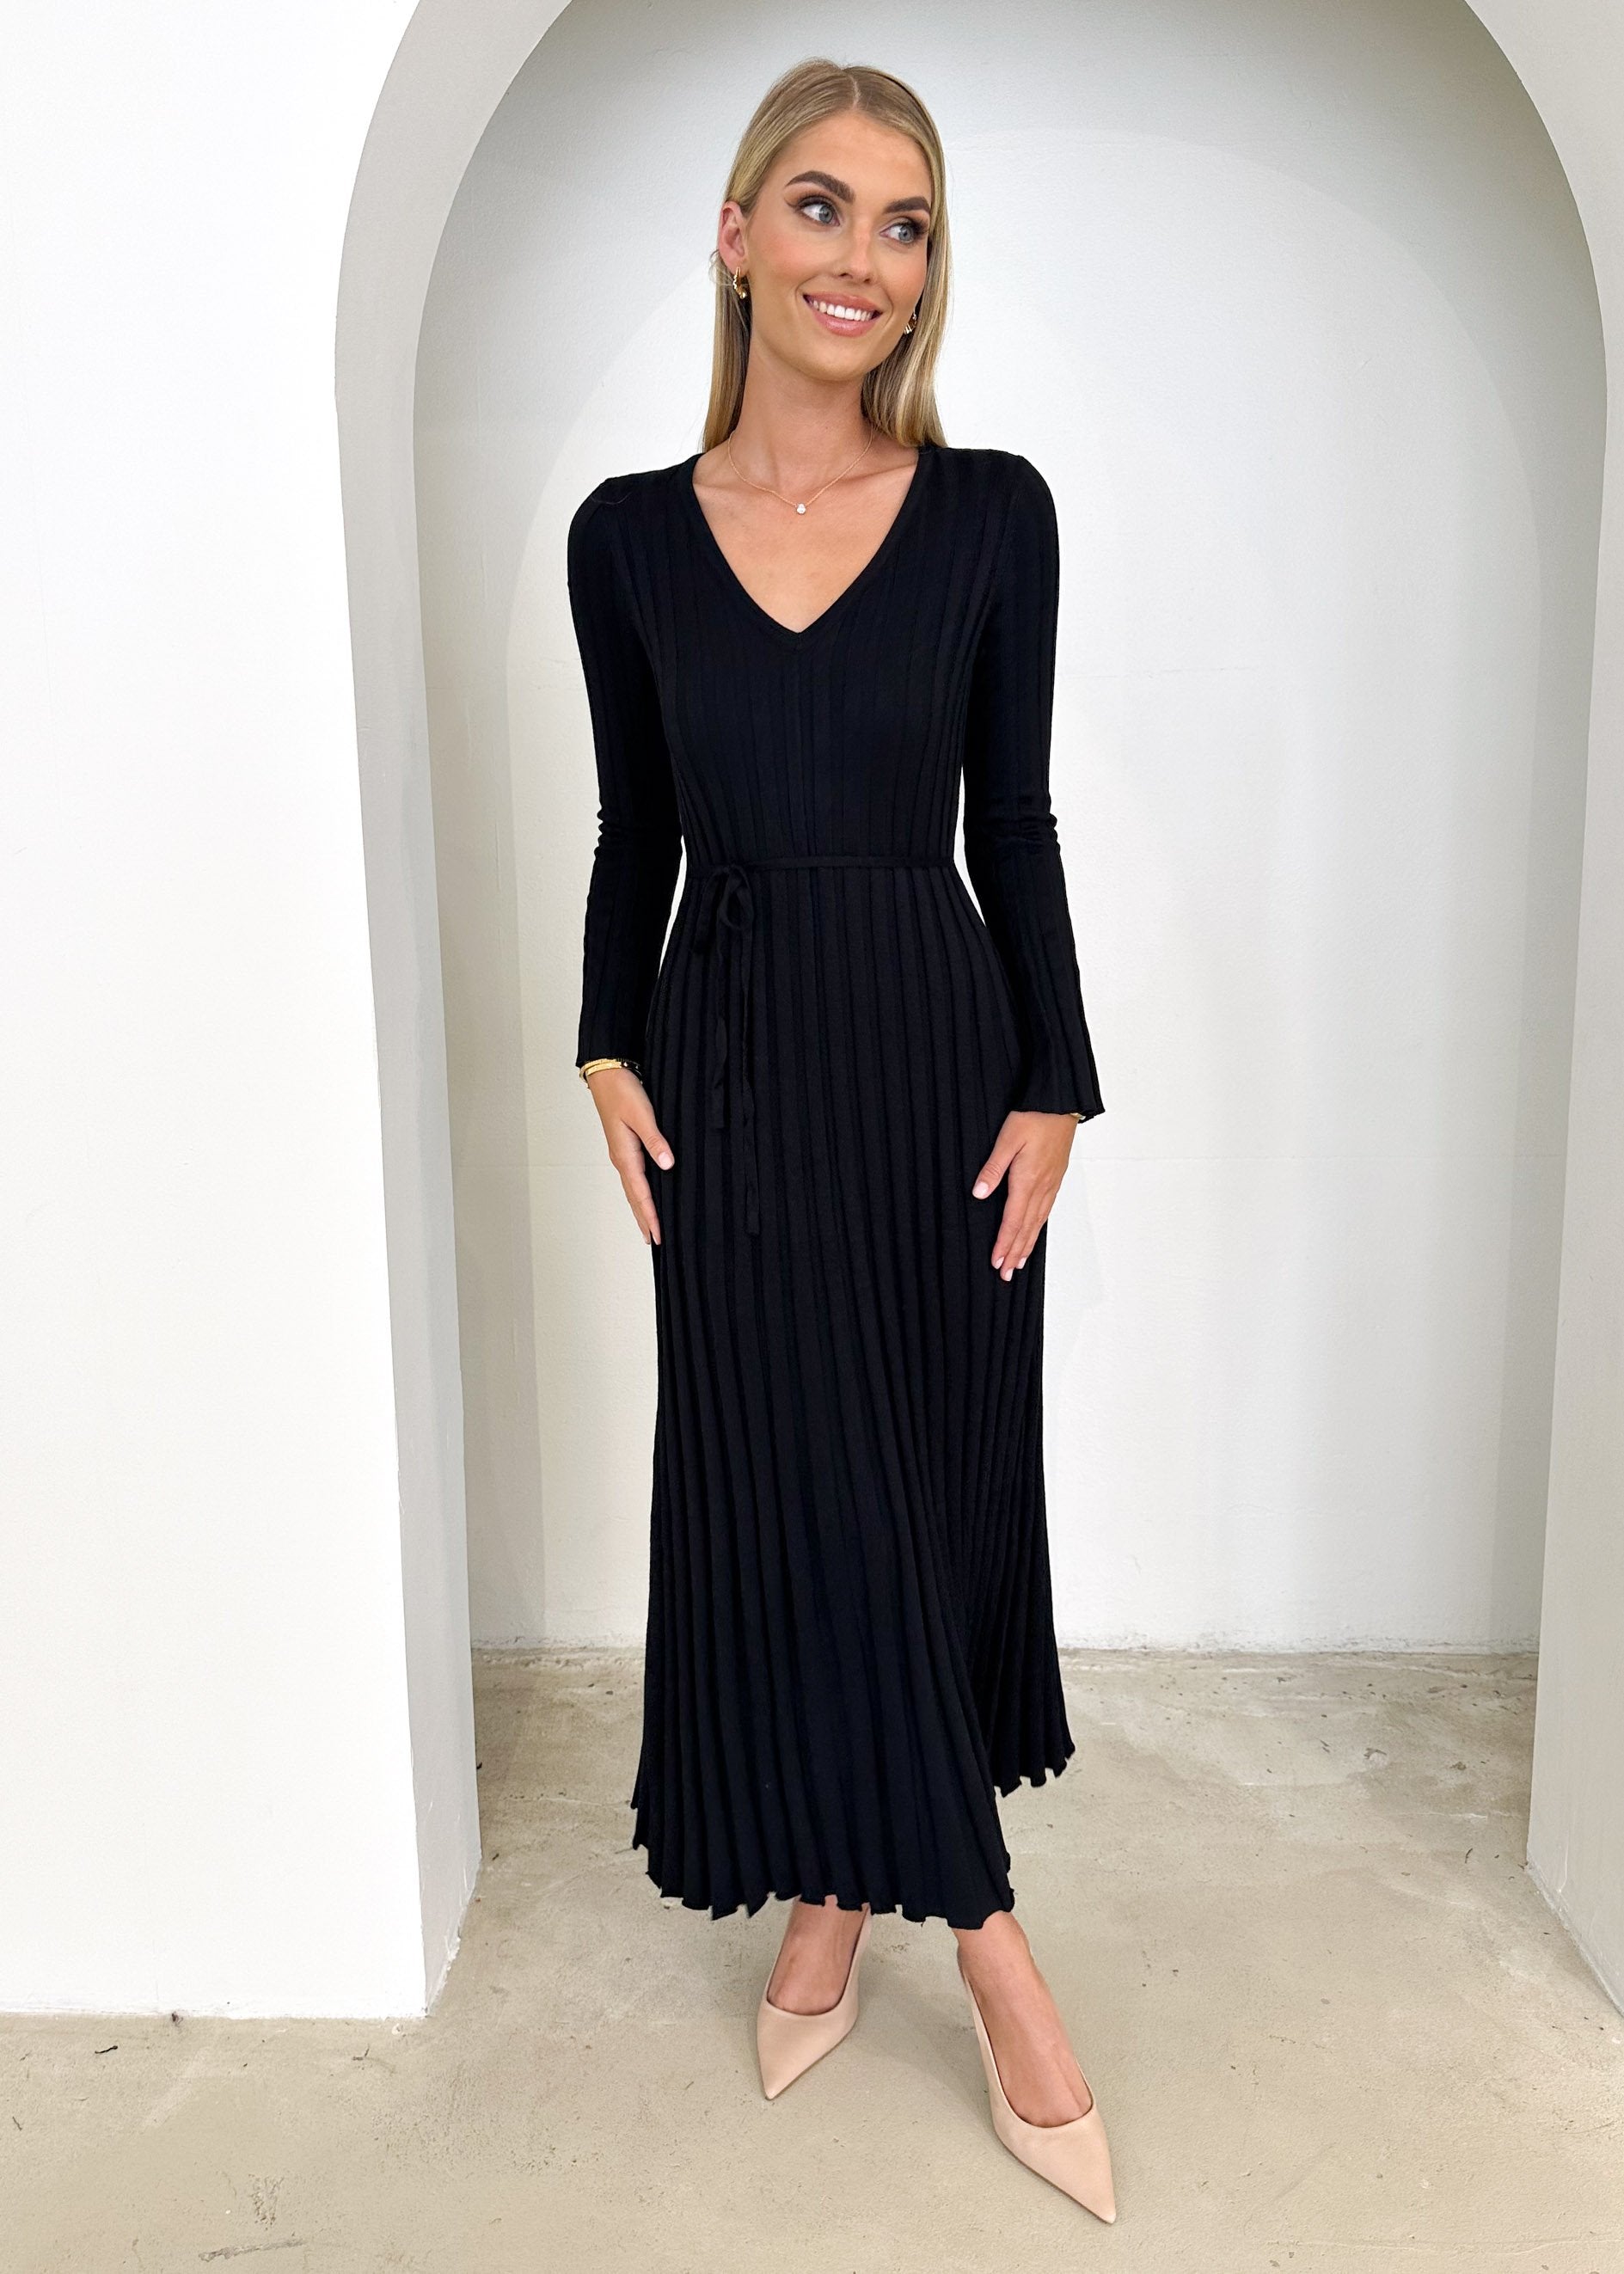 Jelsoe Knit Midi Dress - Black